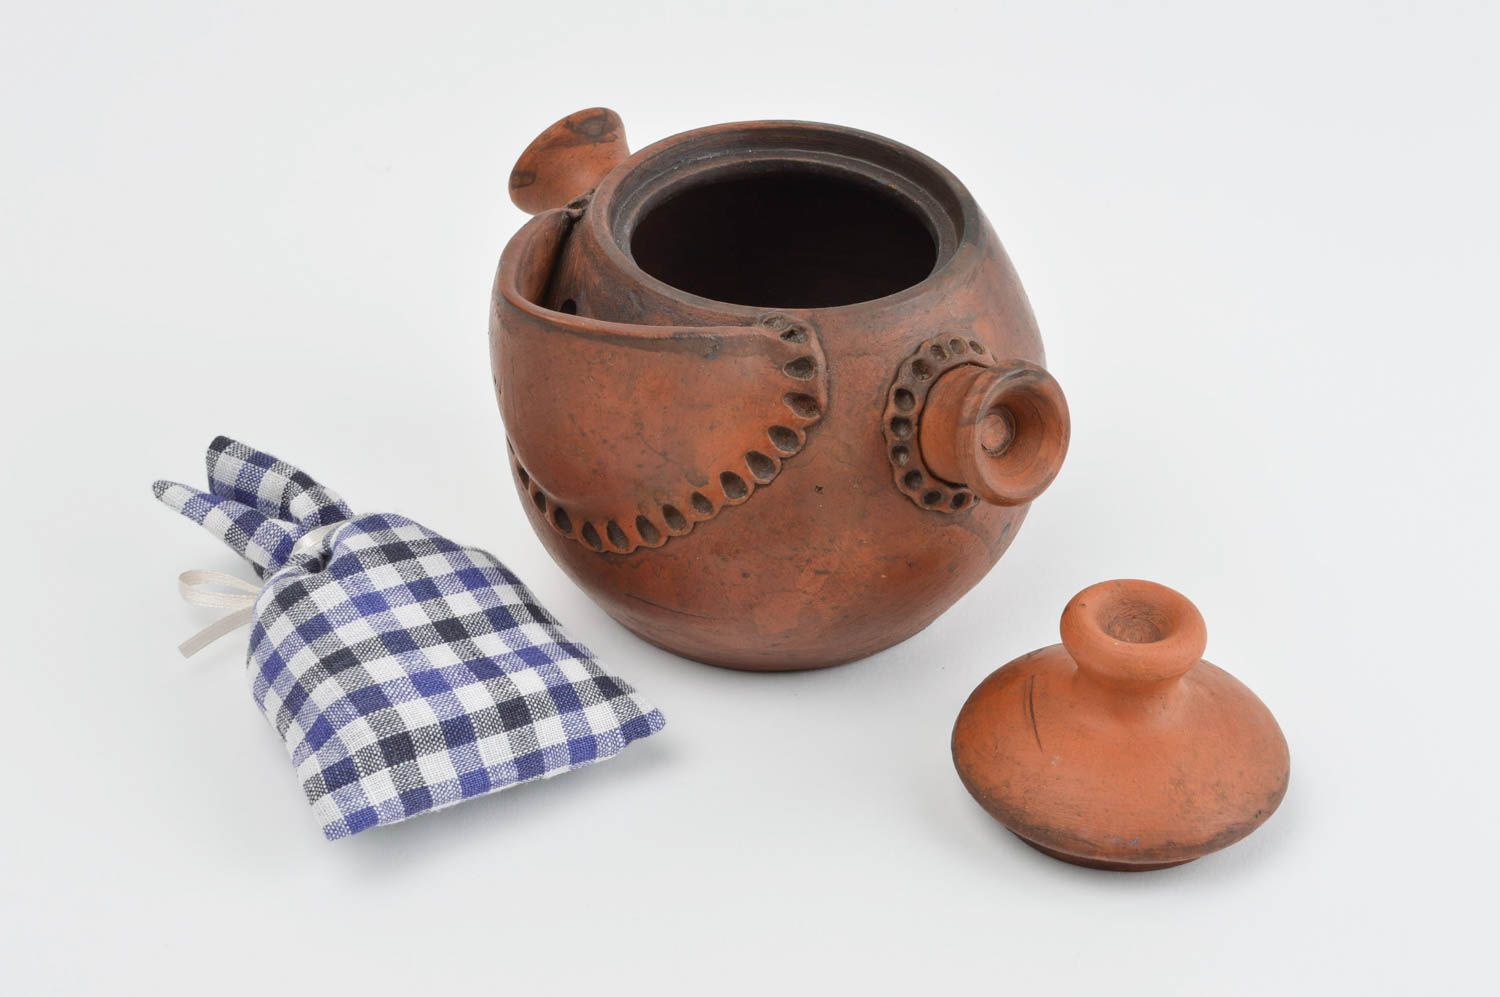 Handmade ceramic teapot pottery works modern kitchen design kitchen supplies photo 1